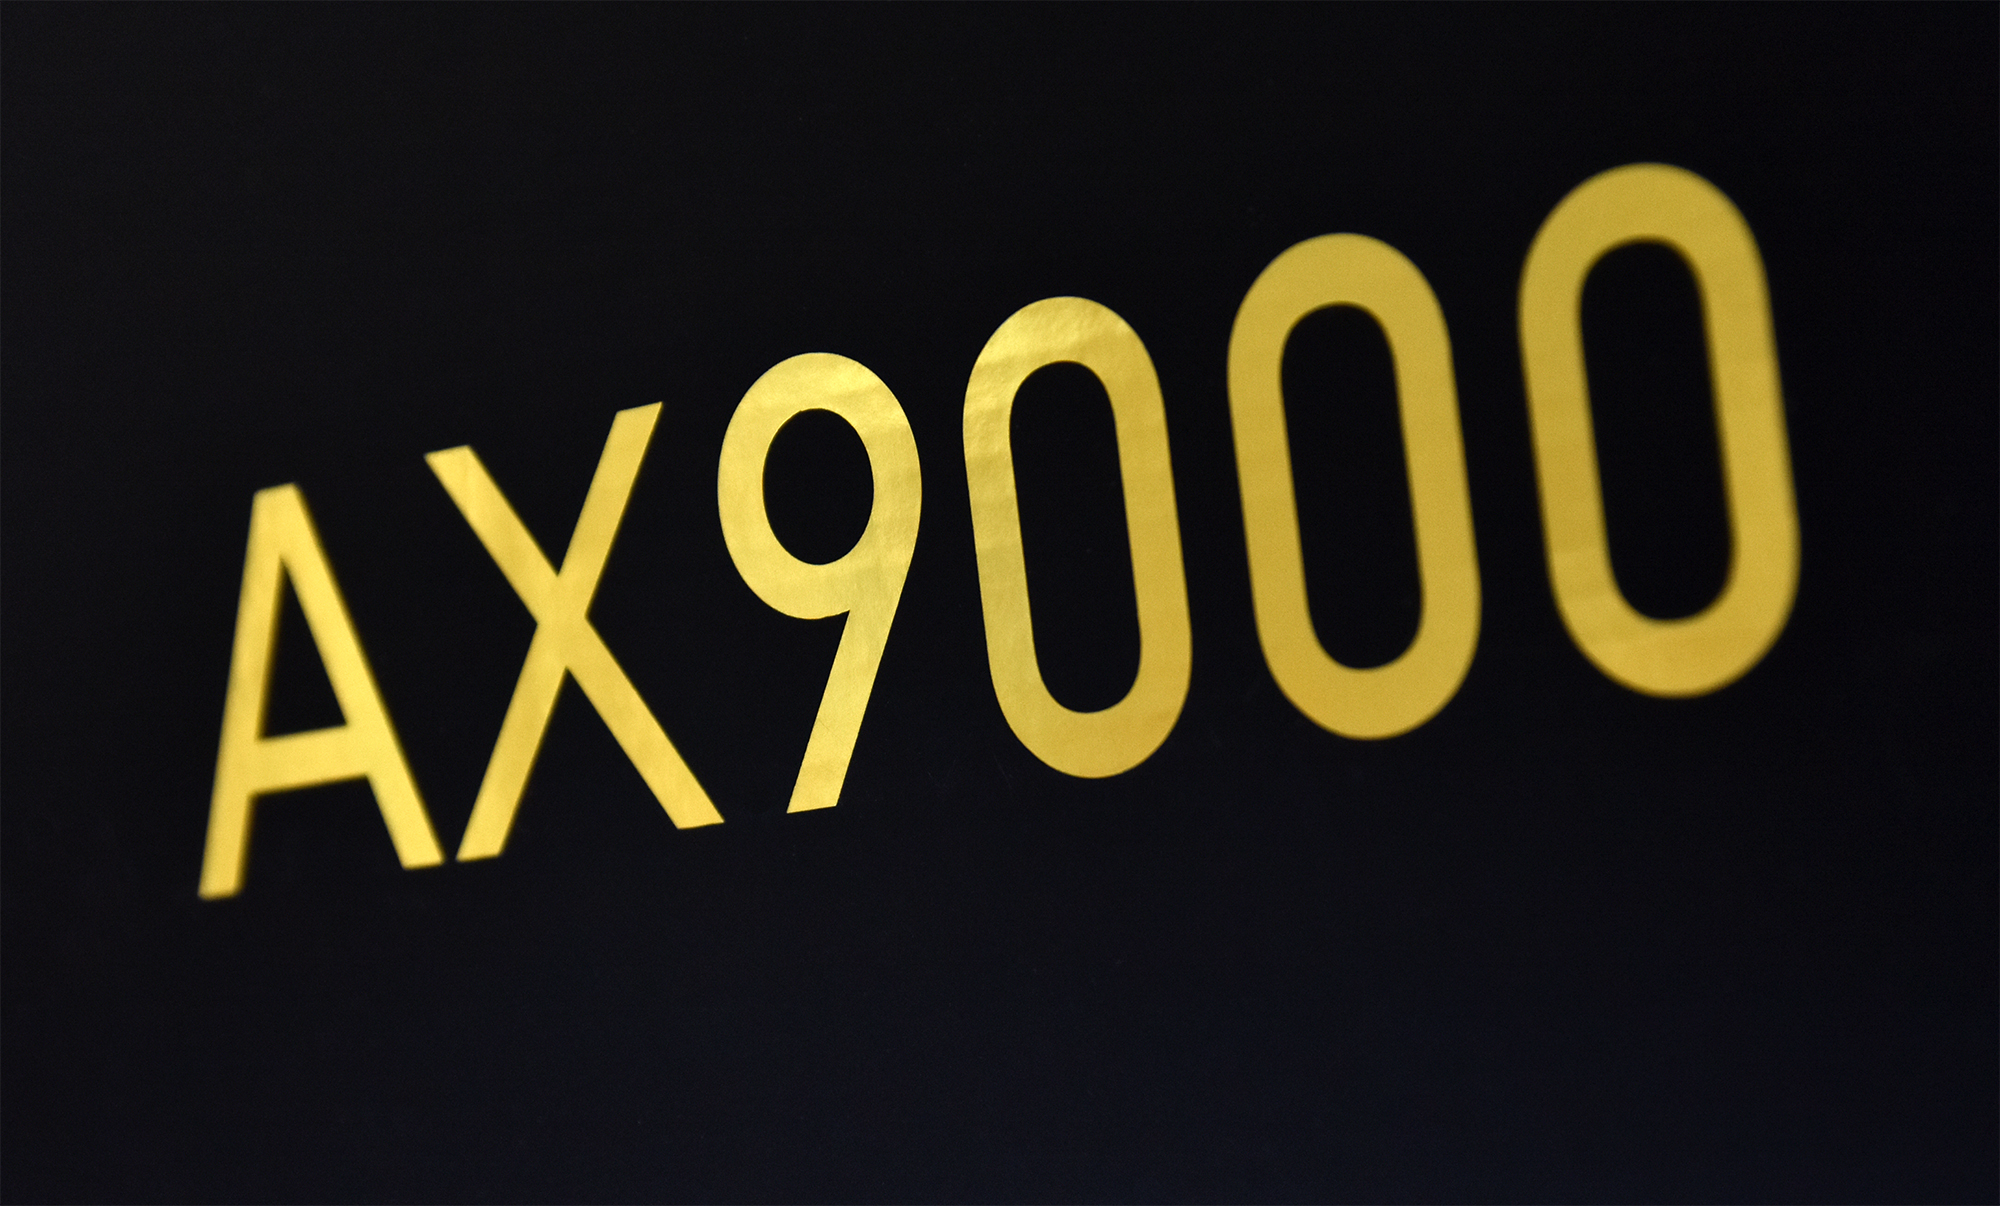 高端品质，亲民价格 小米AX9000电竞路由器优科技开箱